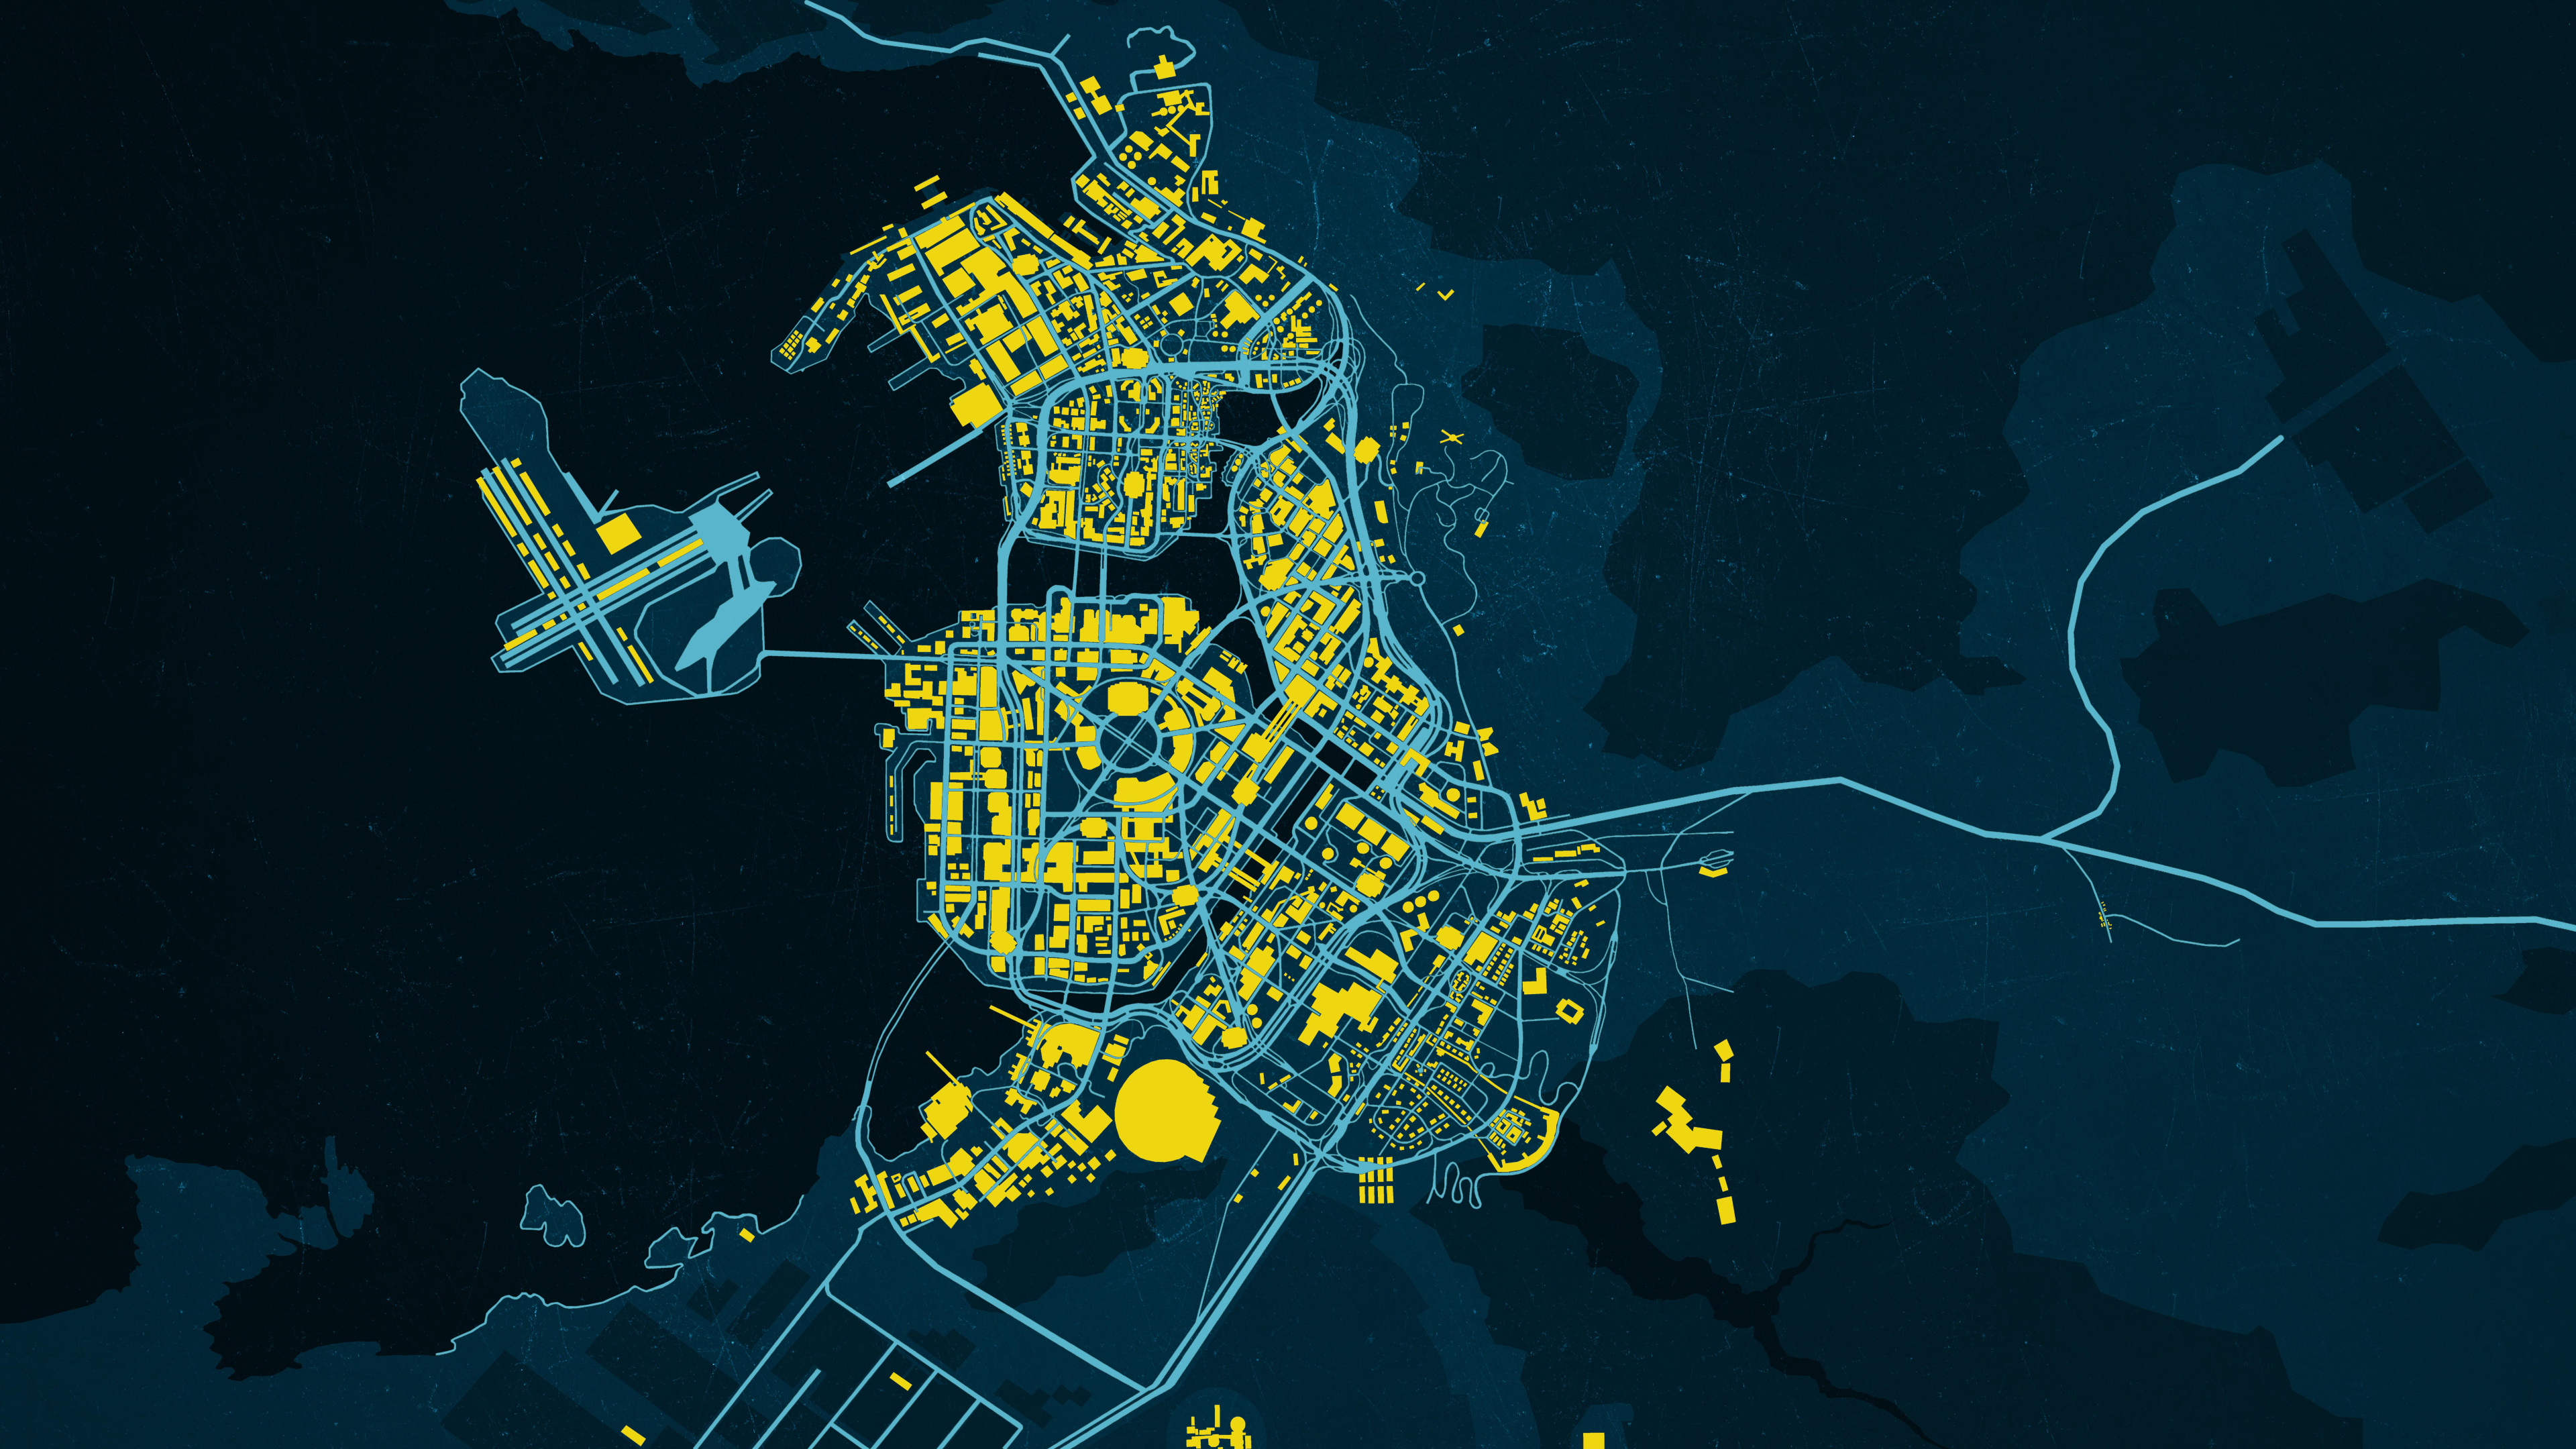 Night card. Киберпанк 2020 карта Найт Сити. Night City Cyberpunk 2077 Map. Cyberpunk 2077 карта города.